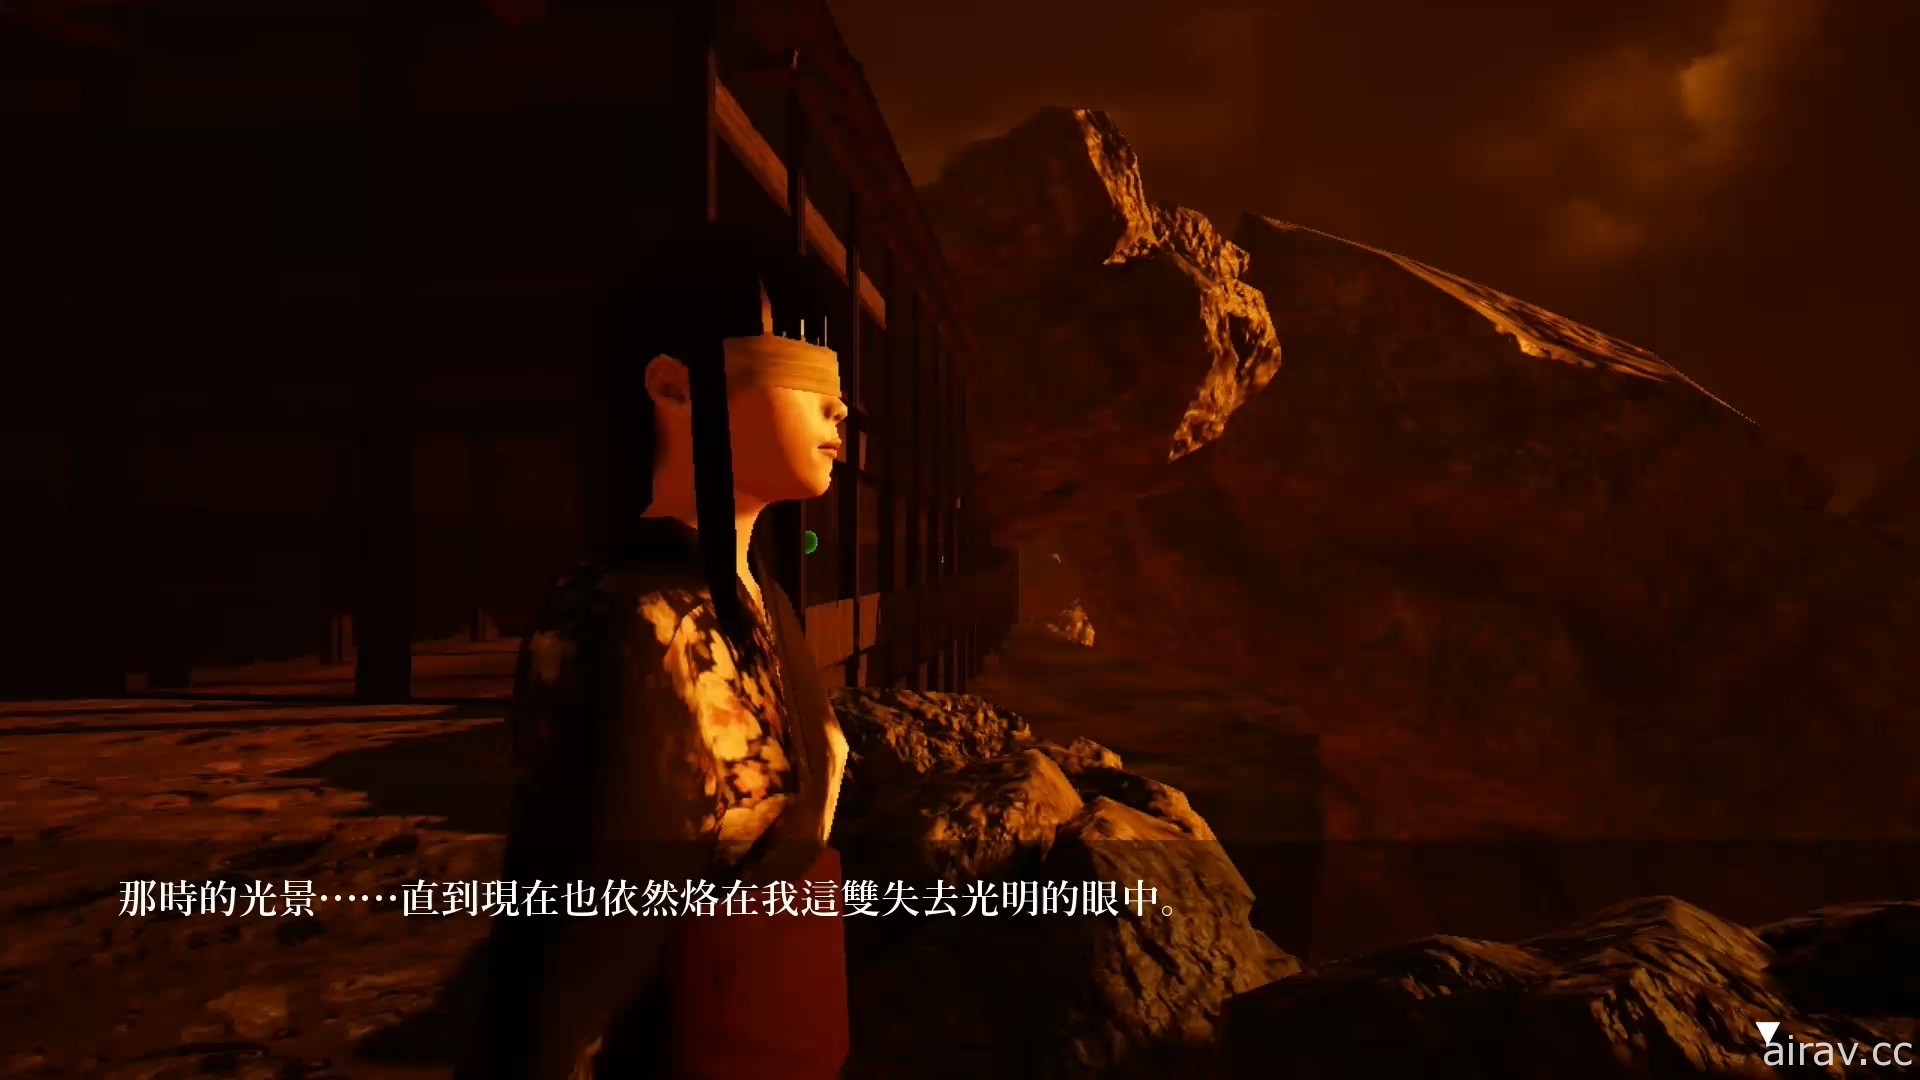 動作驚悚遊戲《影之迴廊 Shadow Corridor》PS4 繁體中文數位版今天上市